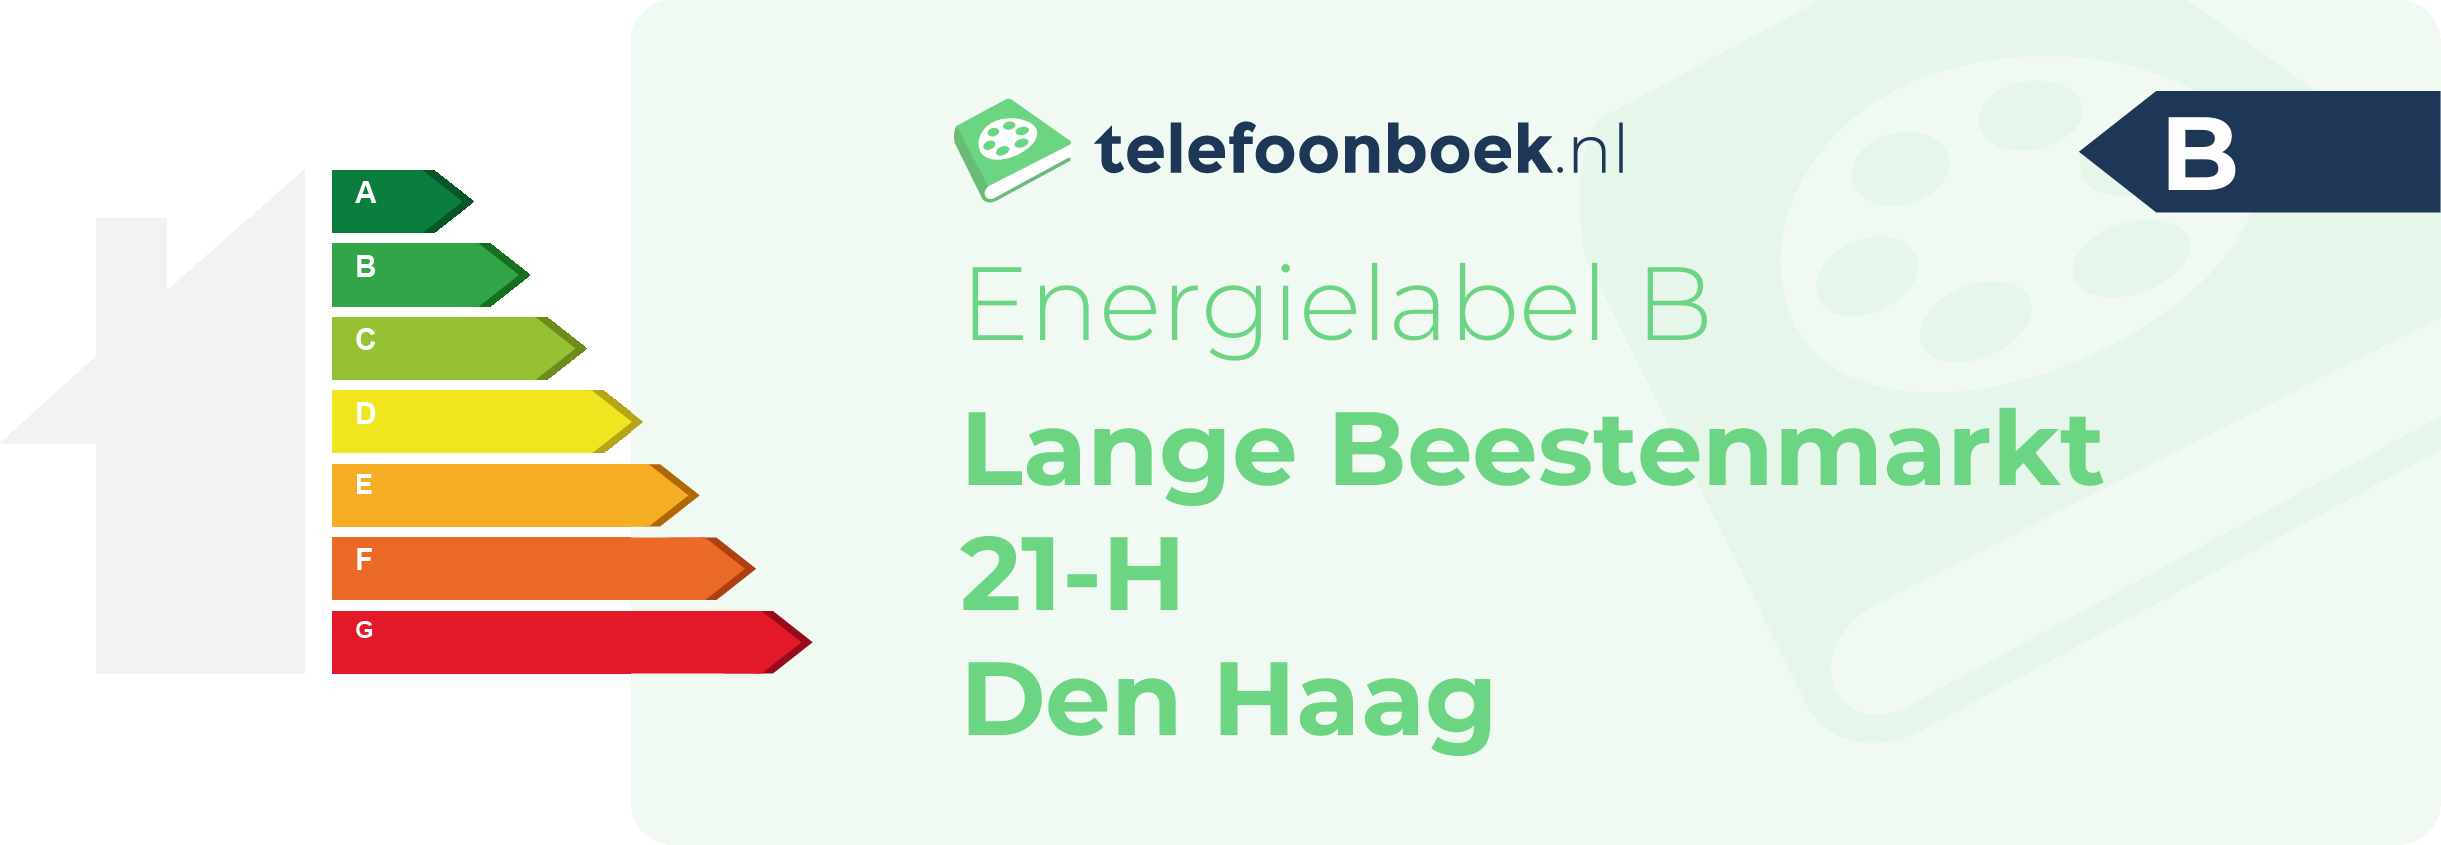 Energielabel Lange Beestenmarkt 21-H Den Haag